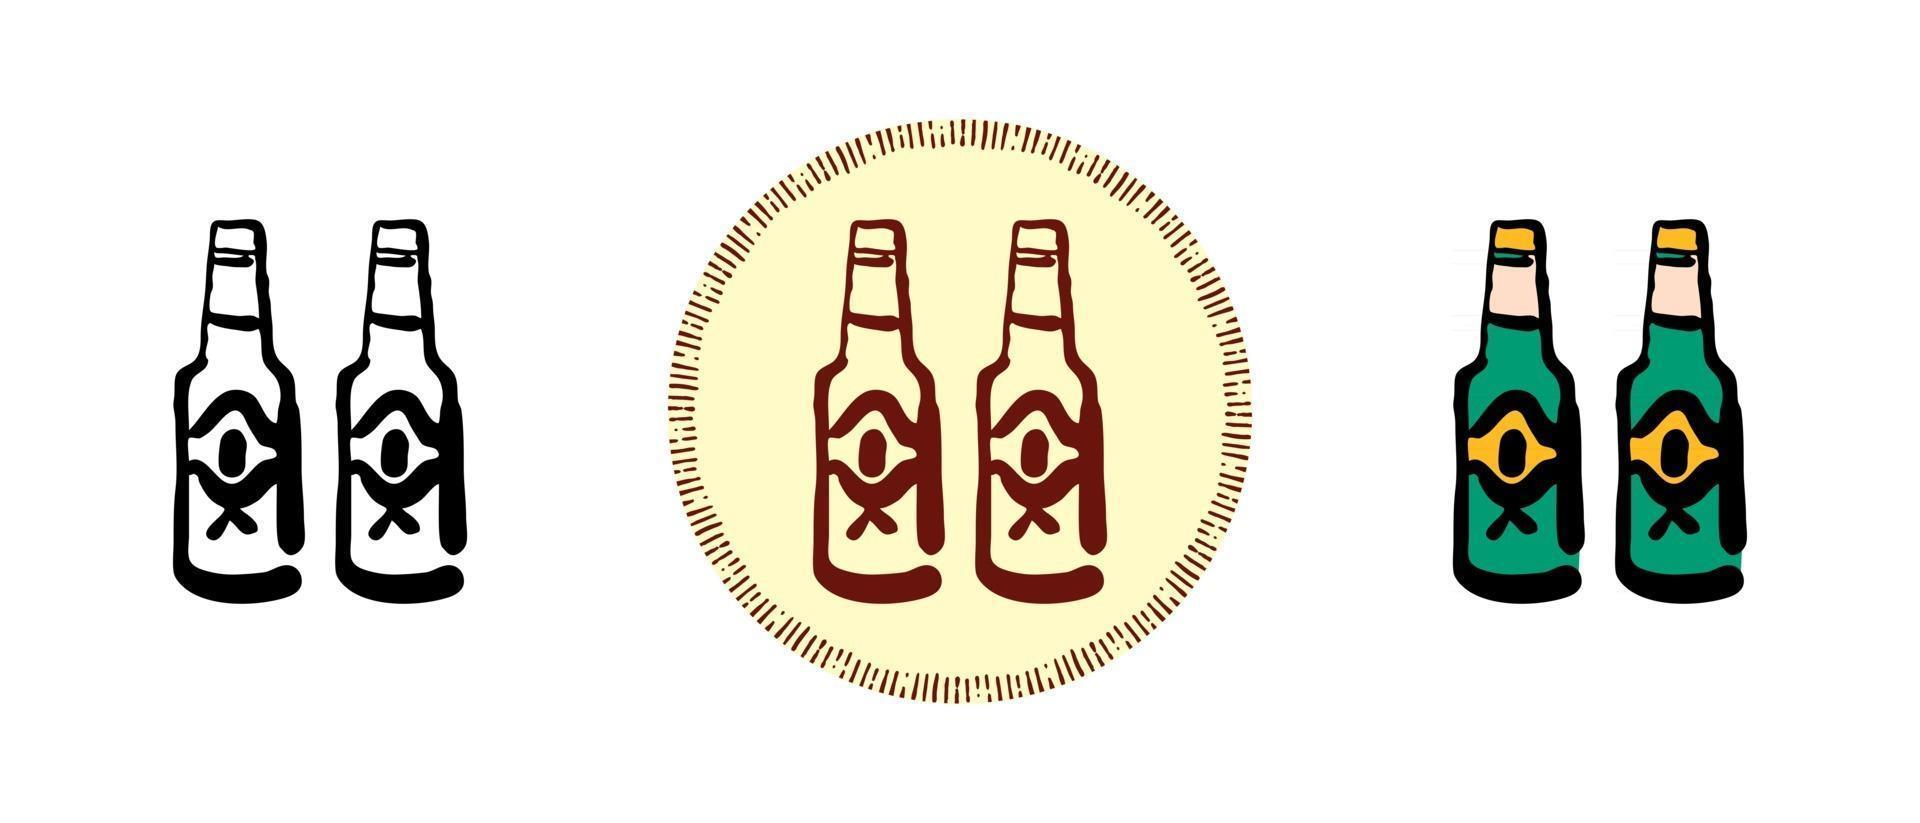 Kontur und Farbe sowie Retro-Bierflaschensymbole vektor